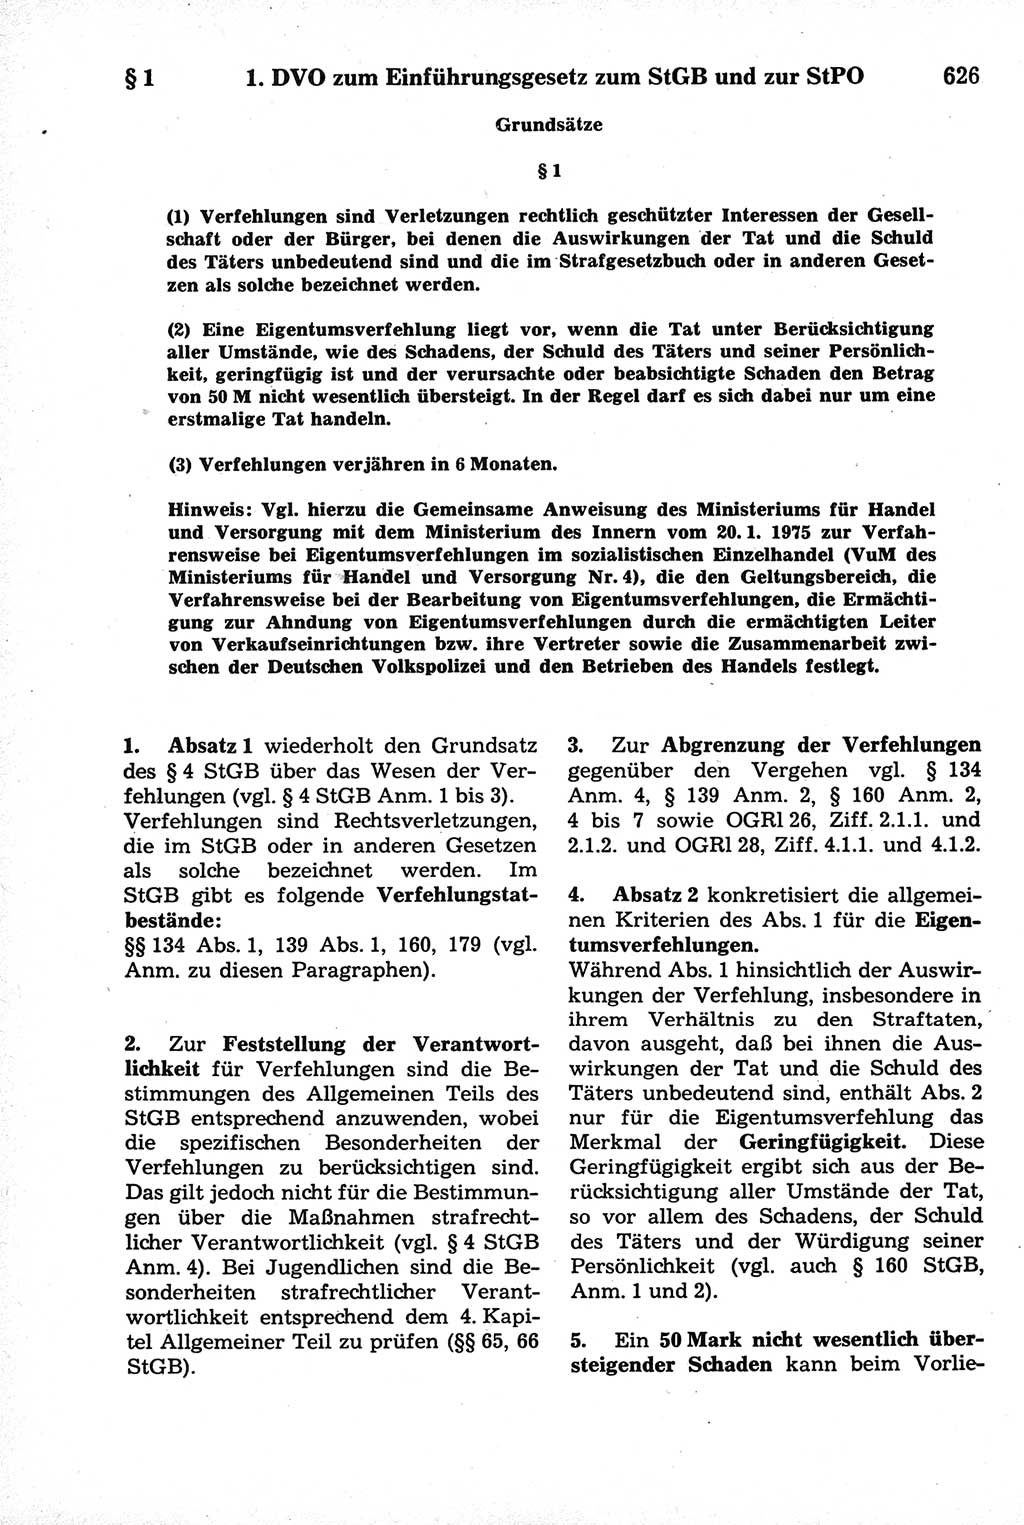 Strafrecht der Deutschen Demokratischen Republik (DDR), Kommentar zum Strafgesetzbuch (StGB) 1981, Seite 626 (Strafr. DDR Komm. StGB 1981, S. 626)